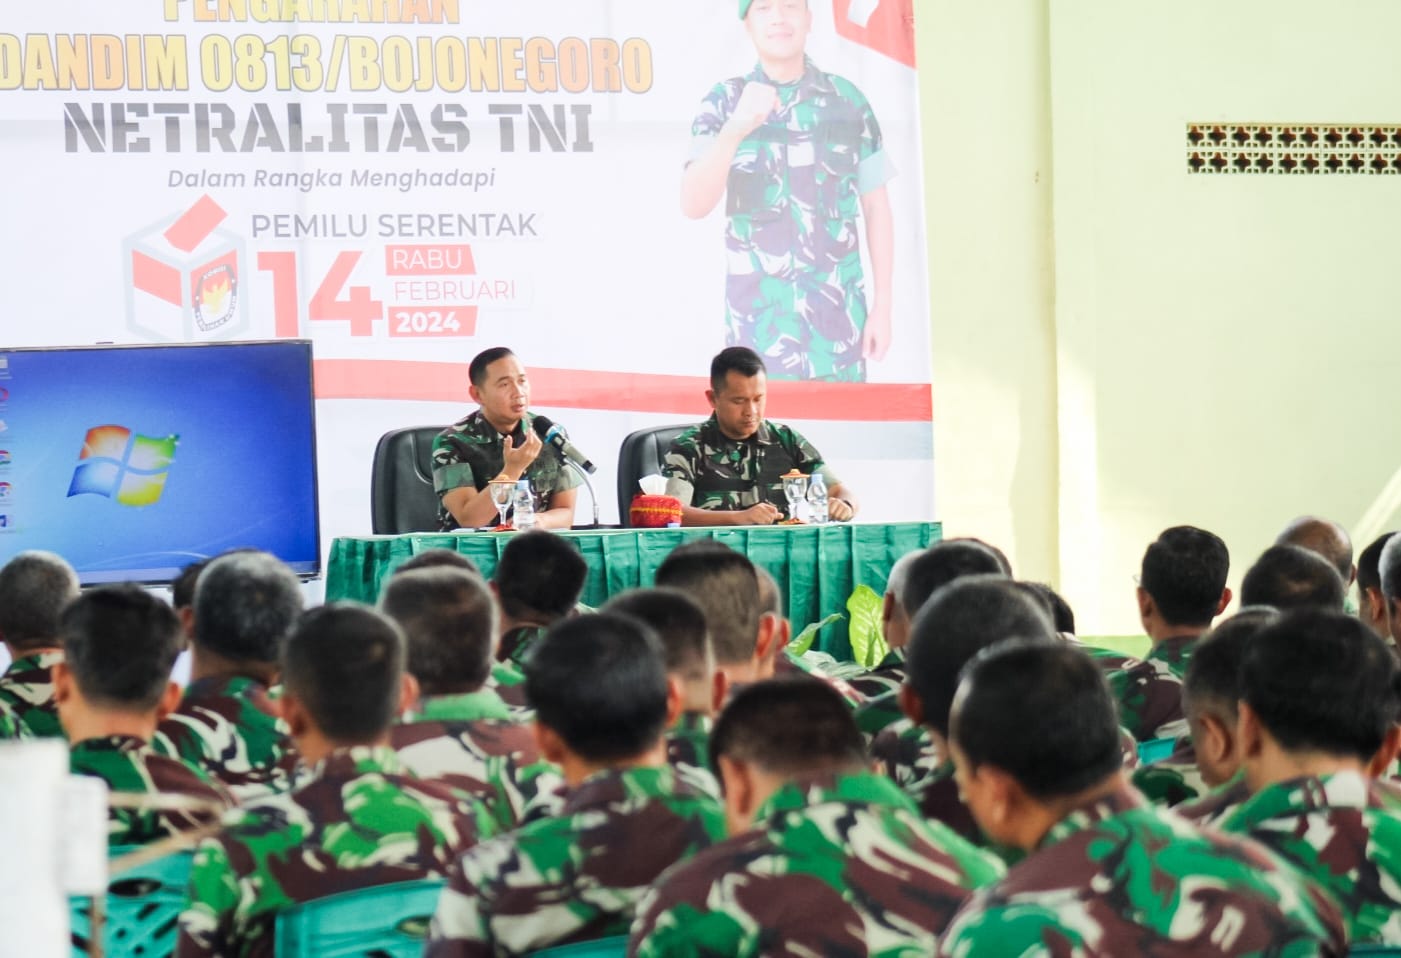 Dandim Bojonegoro tegaskan, TNI Jaga Netralitas Pada Pemilu